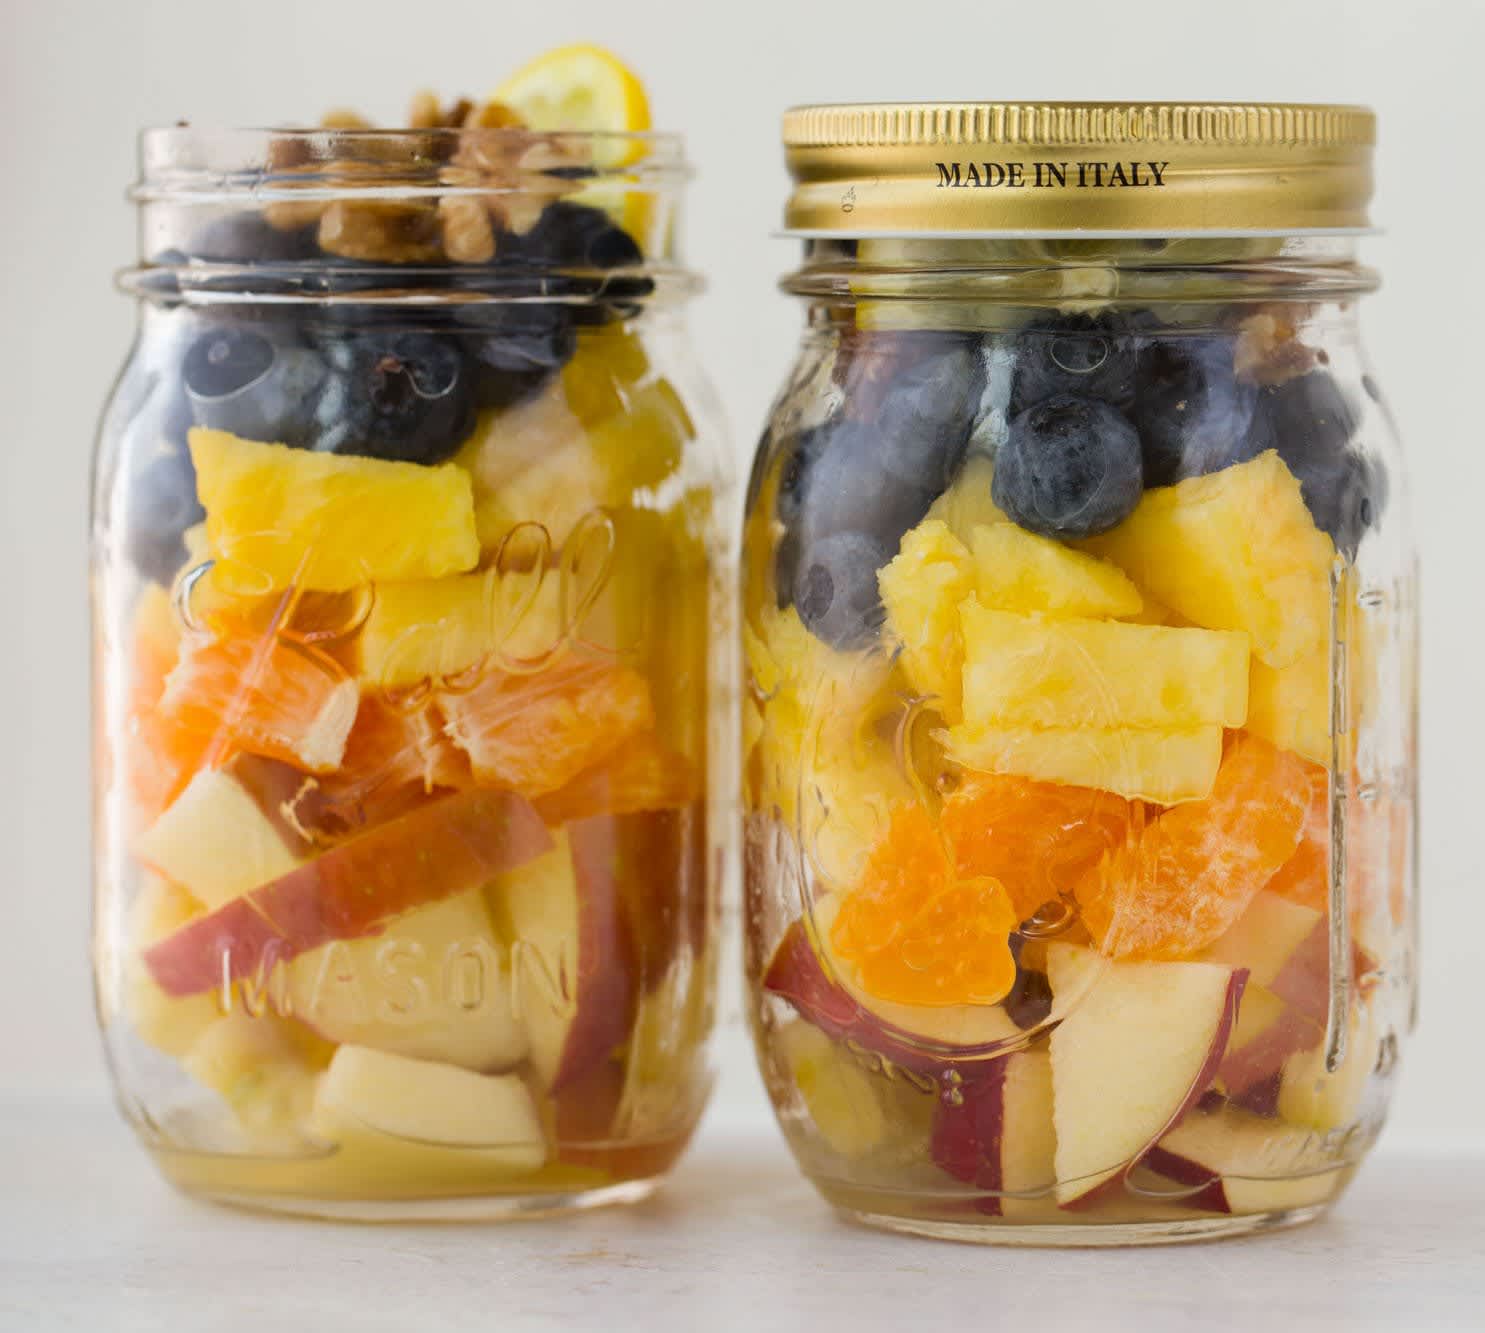 Fruit Salad in a Jar